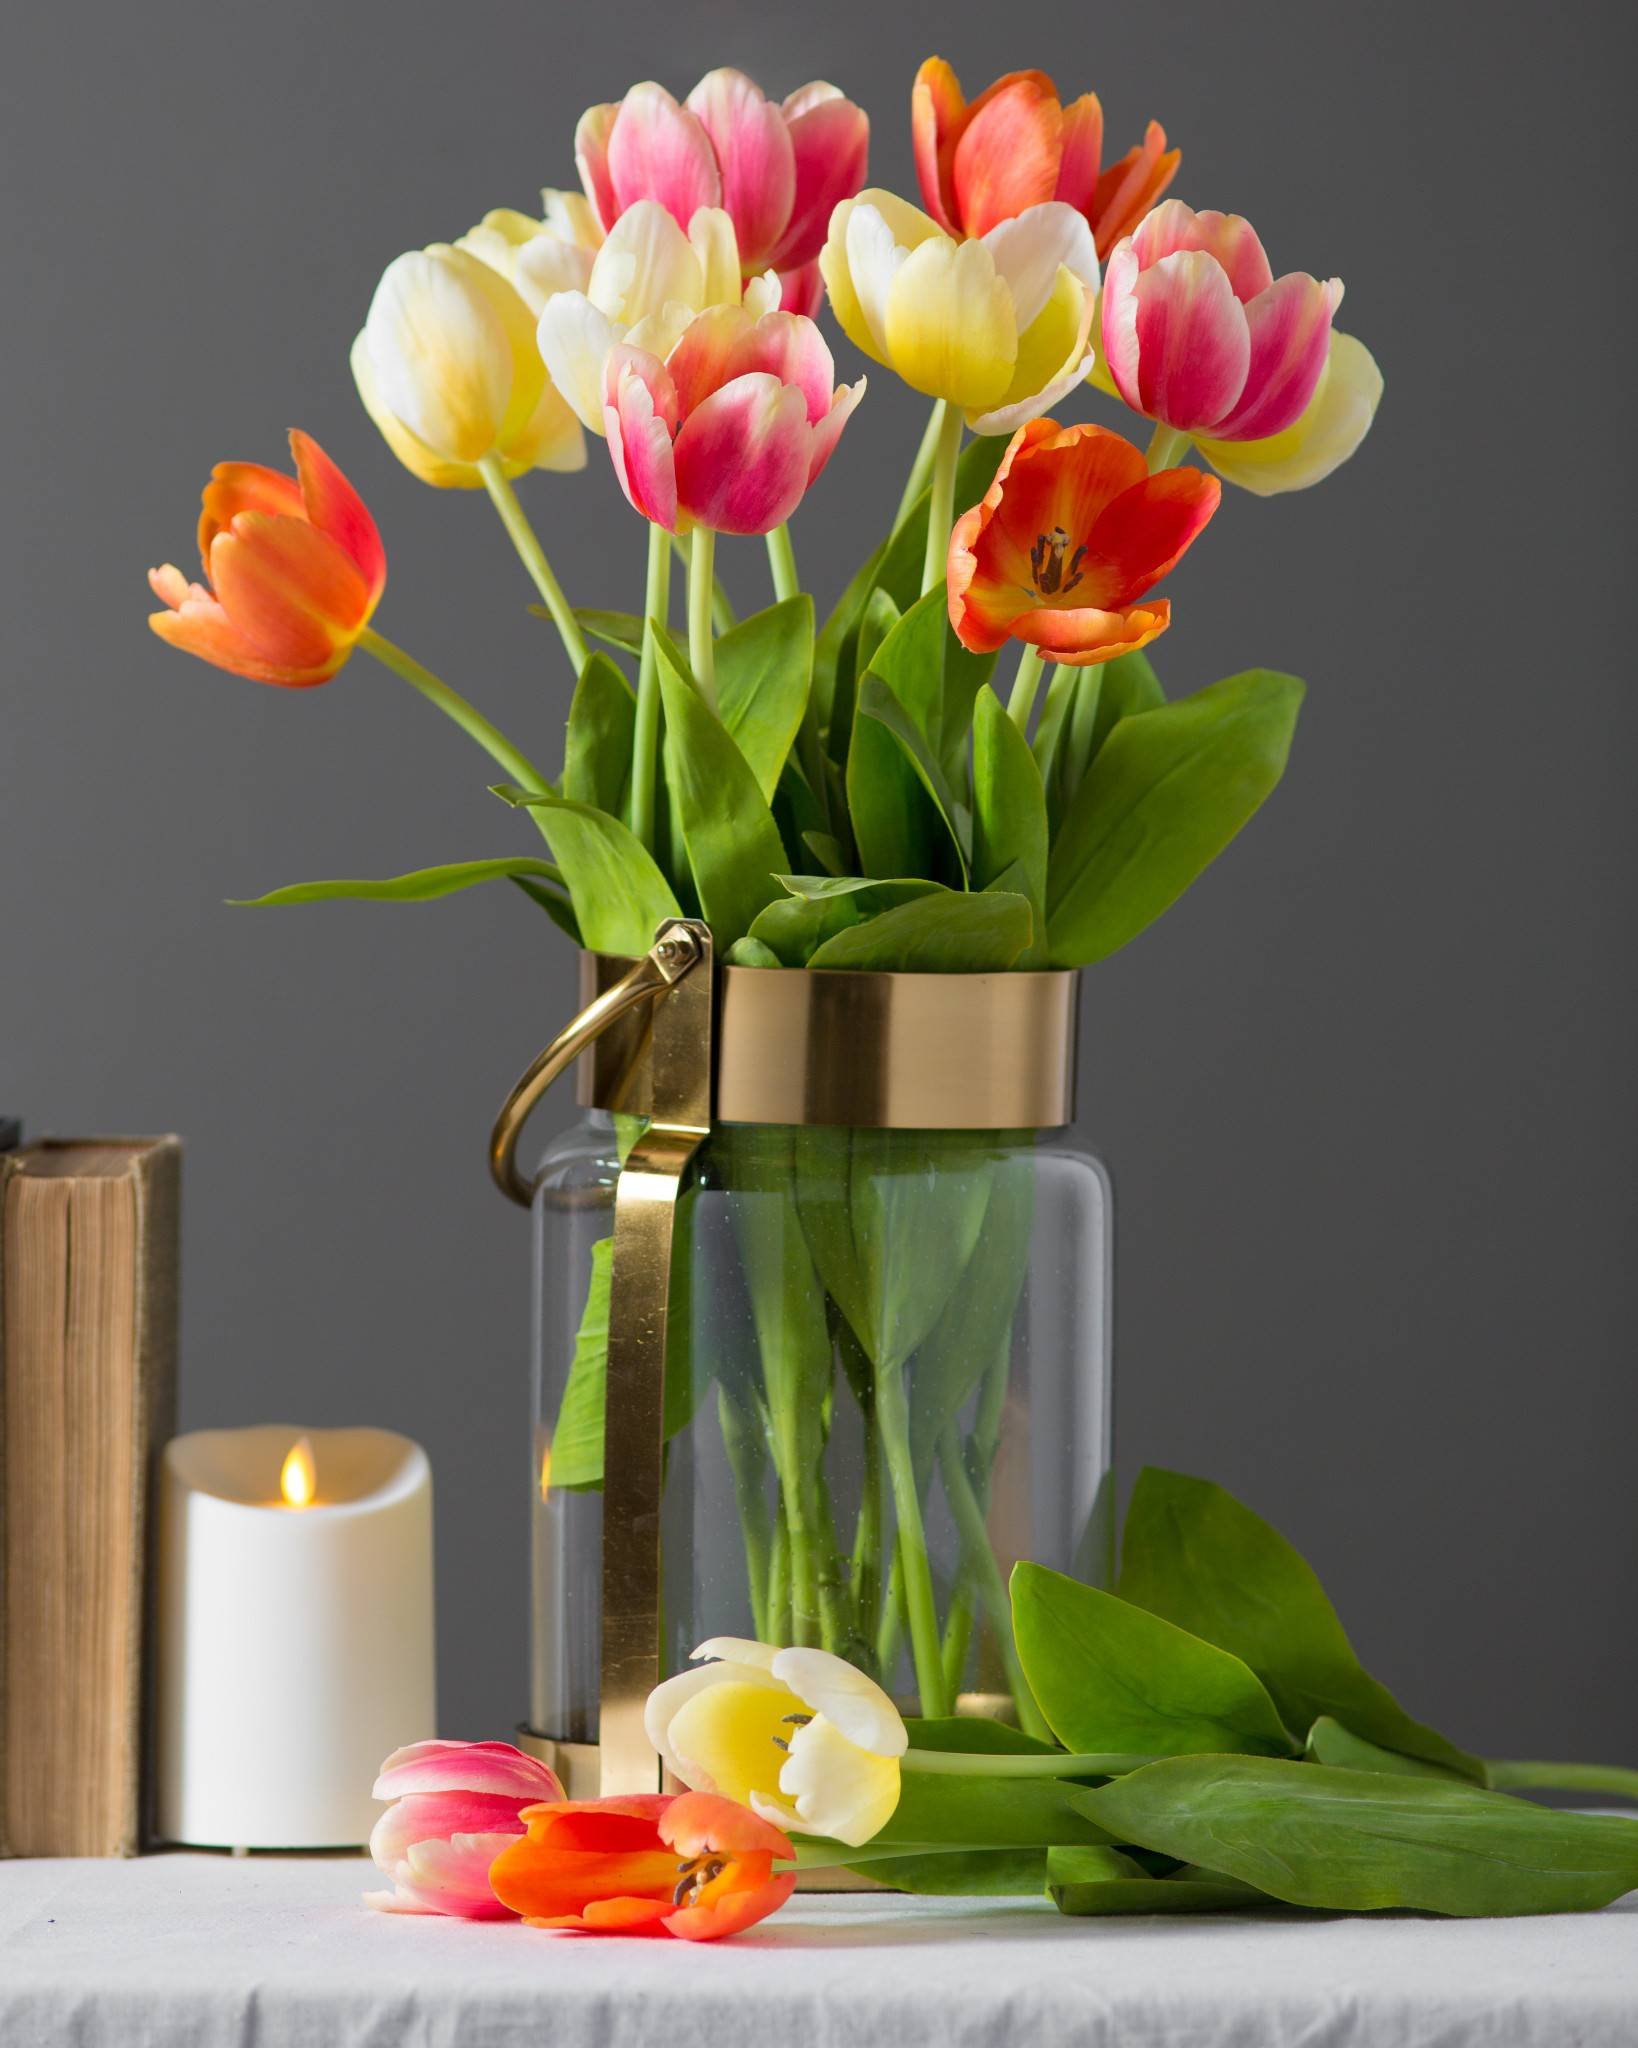 Тюльпаны в интерьере. Тюльпаны в вазе. Тюльпаны в стеклянной вазе. Дульбаны в ваззе. Тюльпаны в вазах.